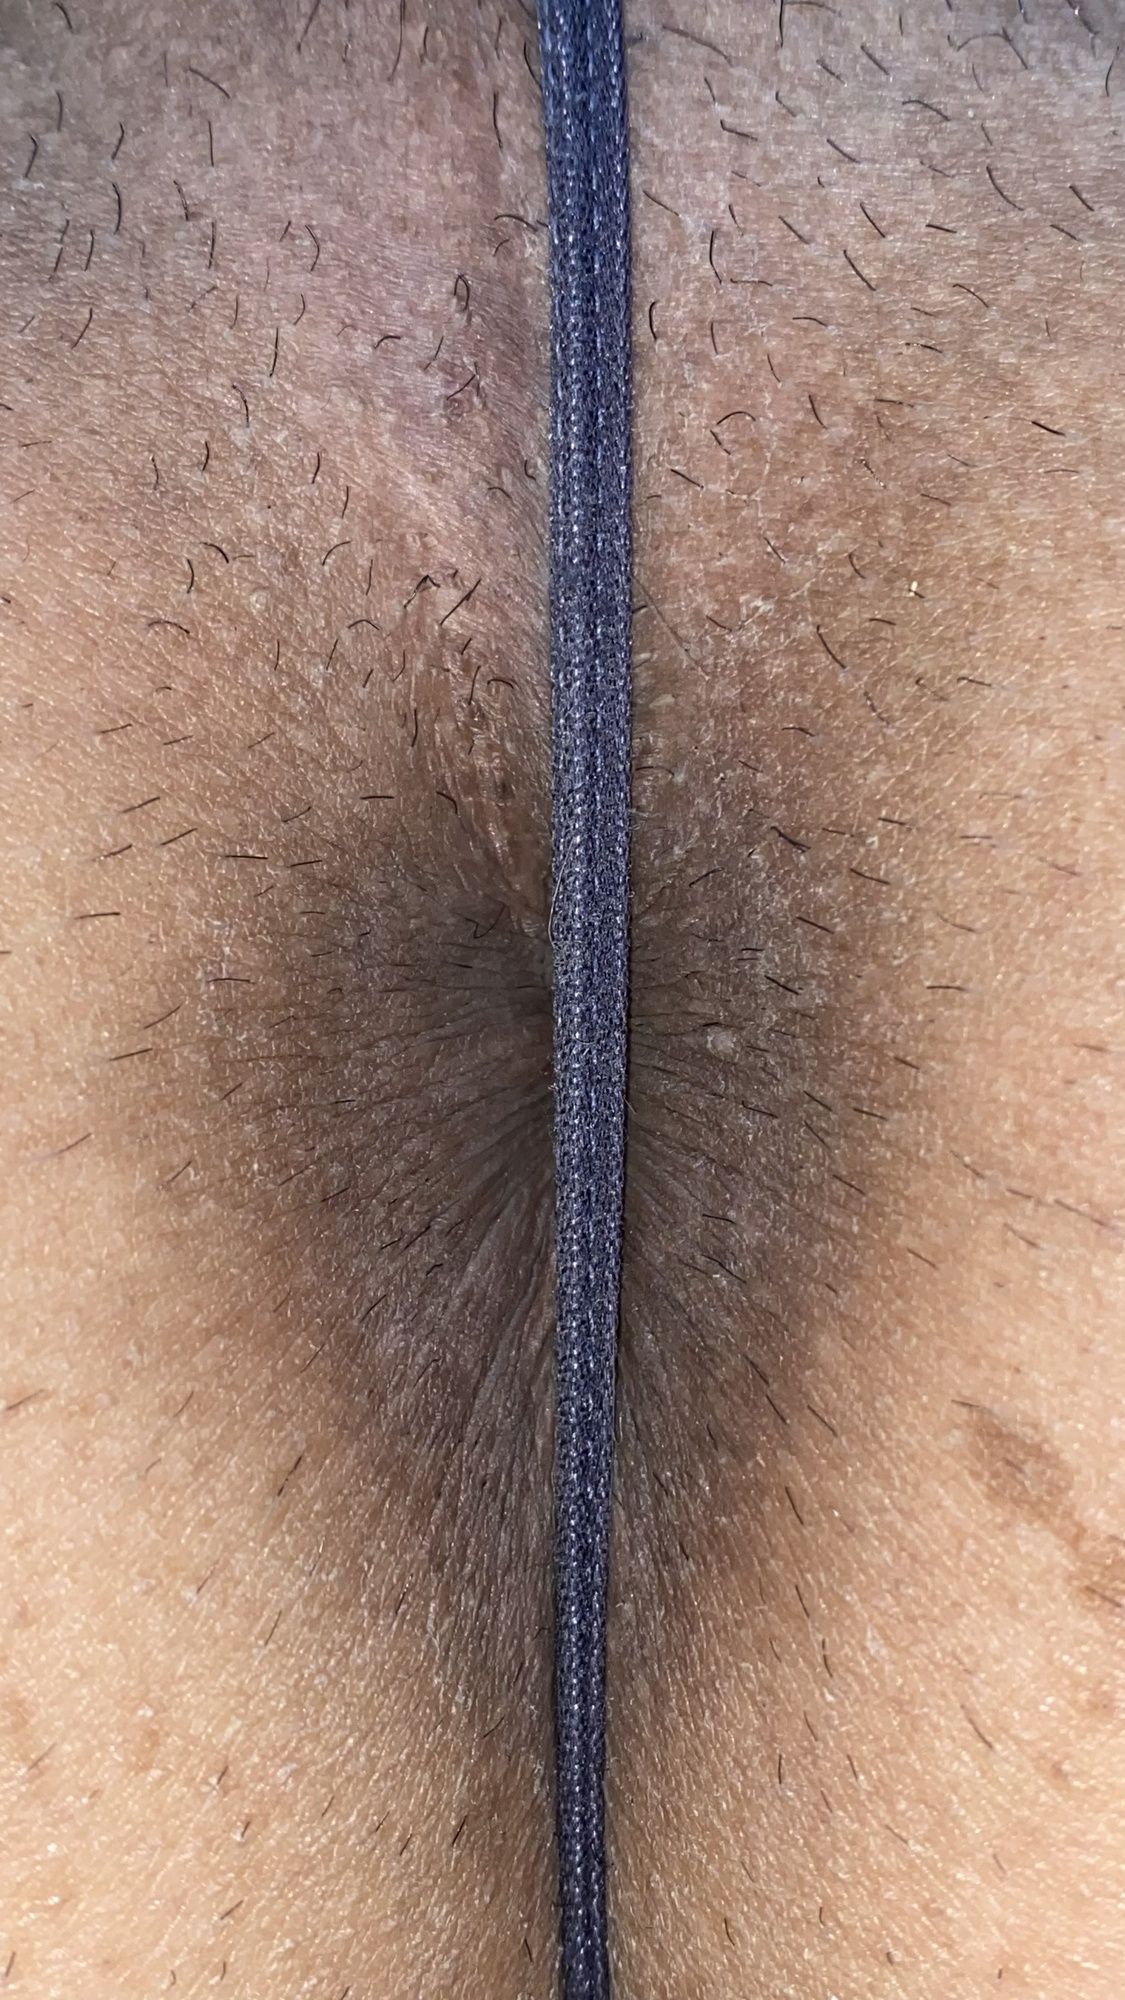 Underwear, buttocks and anus #31